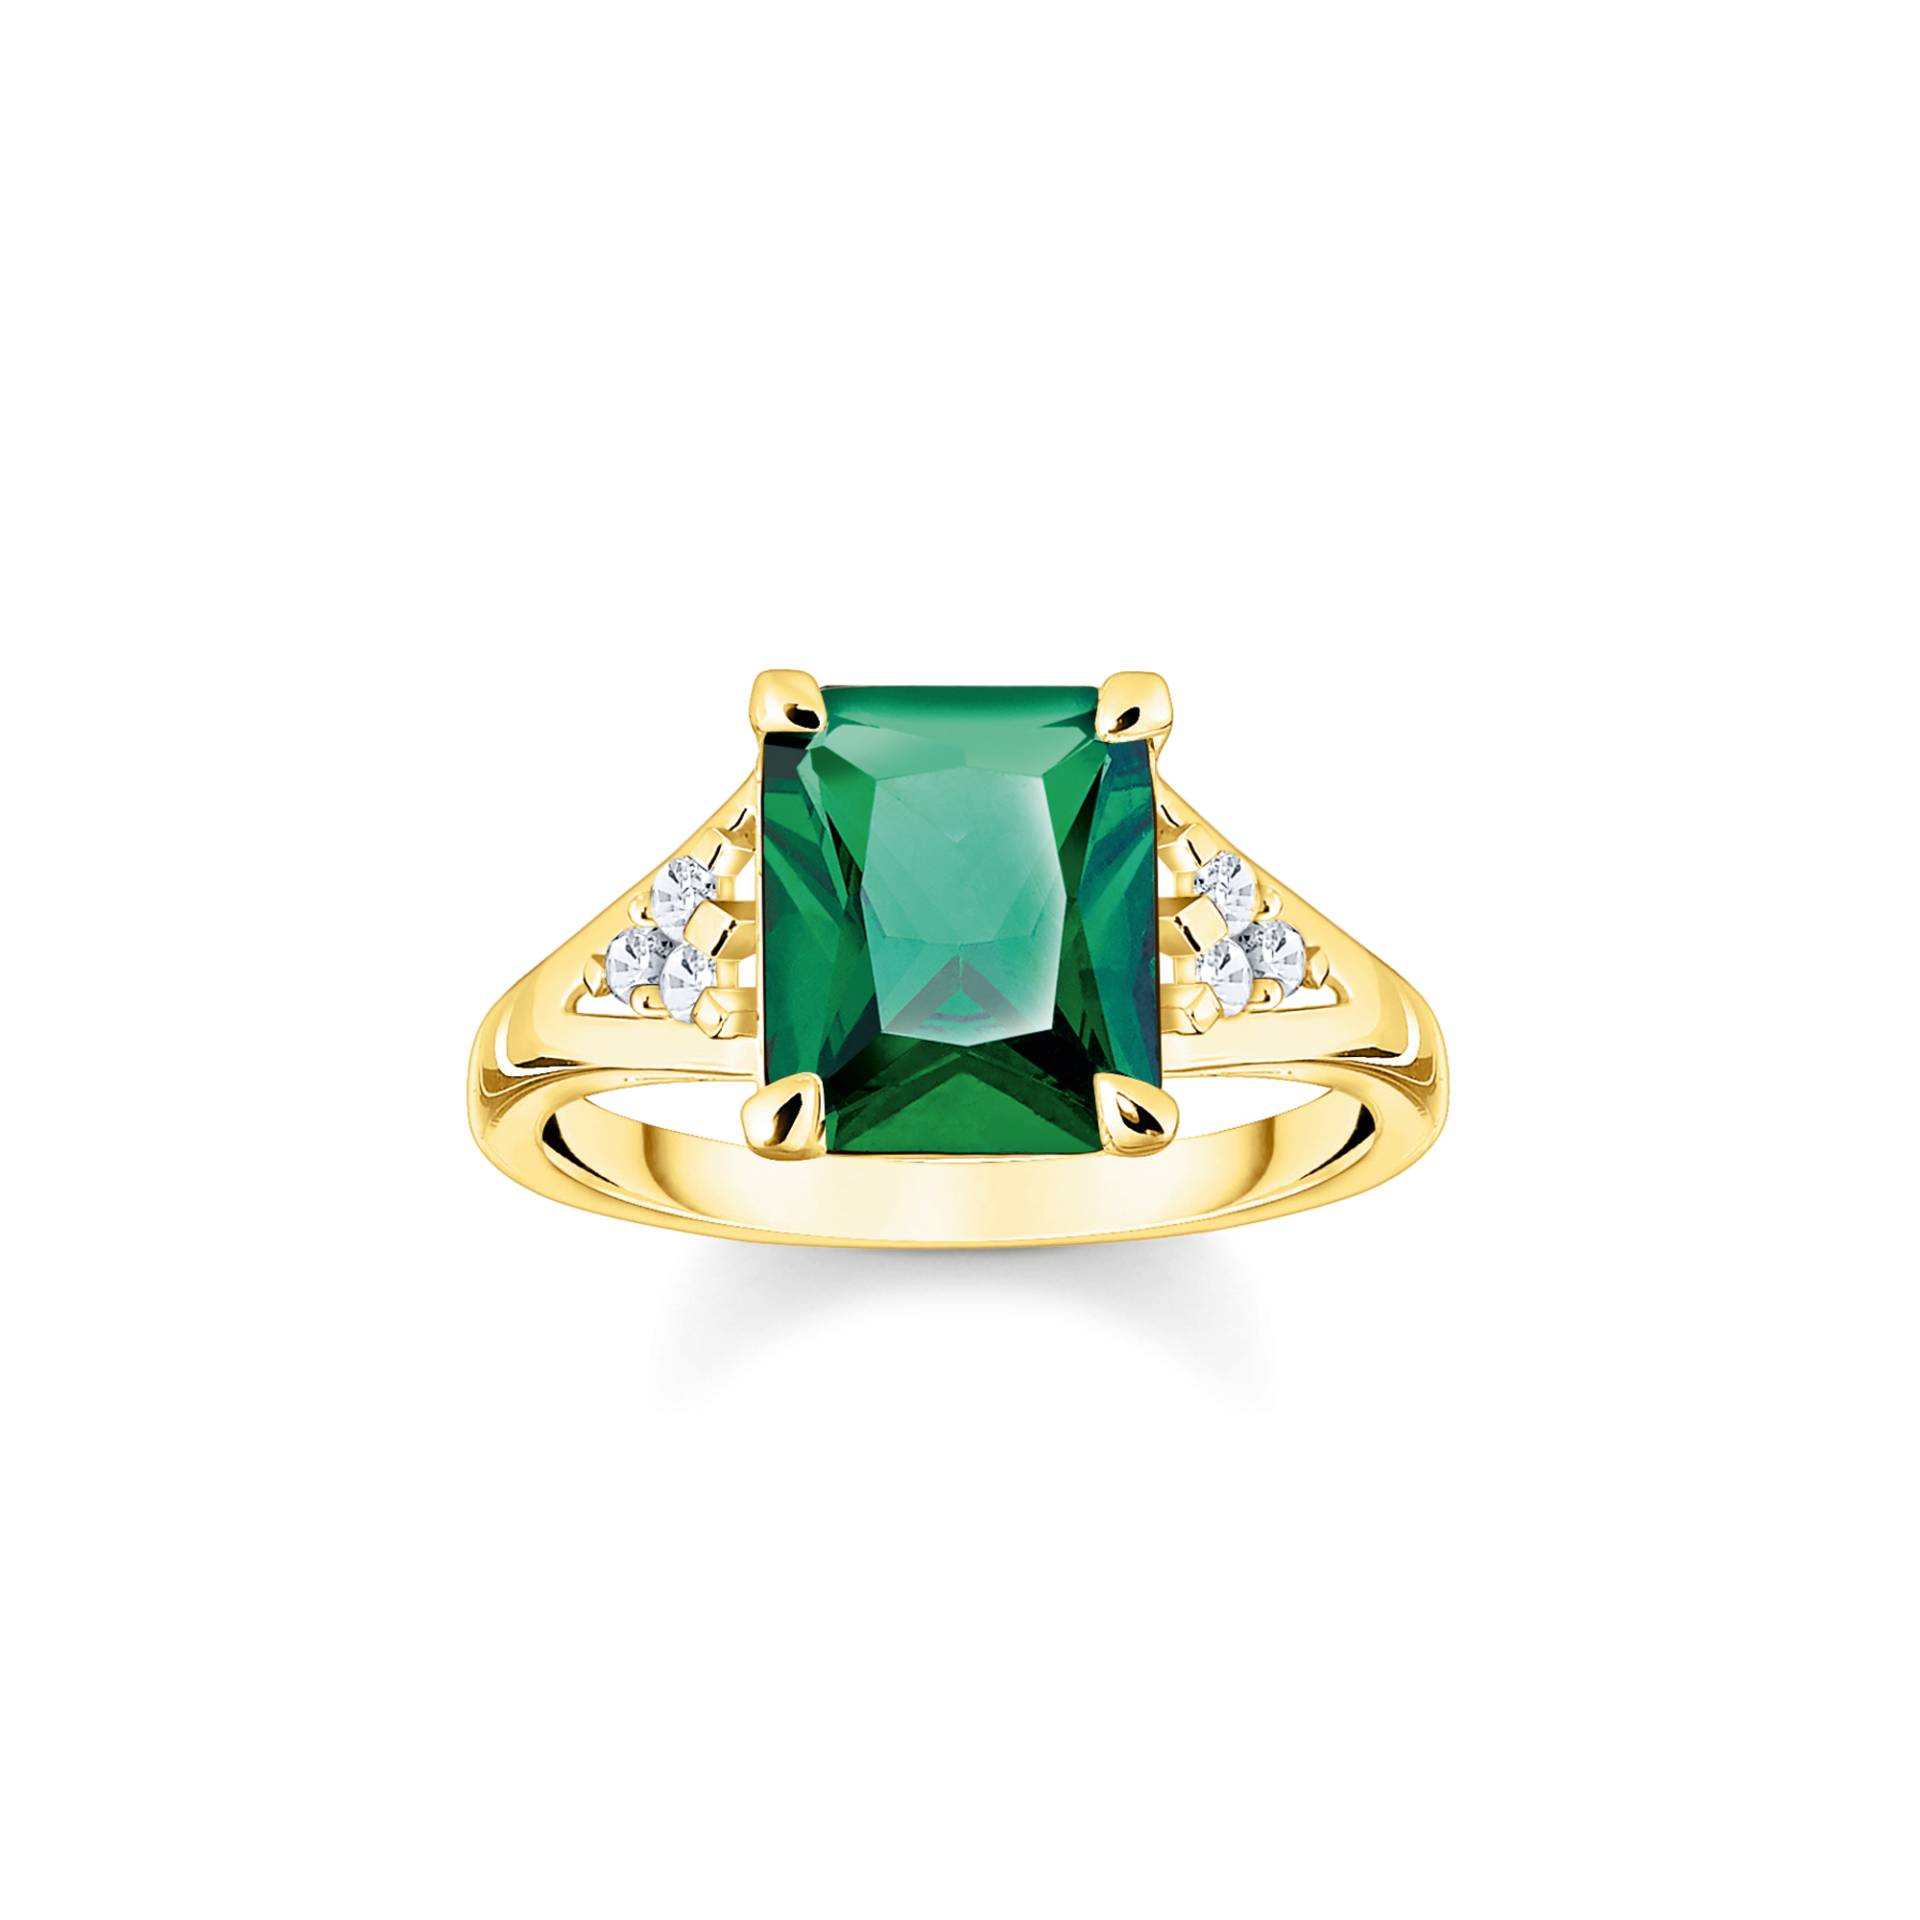 Thomas Sabo Ring mit grünen und weißen Steinen vergoldet grün TR2362-971-6-48 von Thomas Sabo